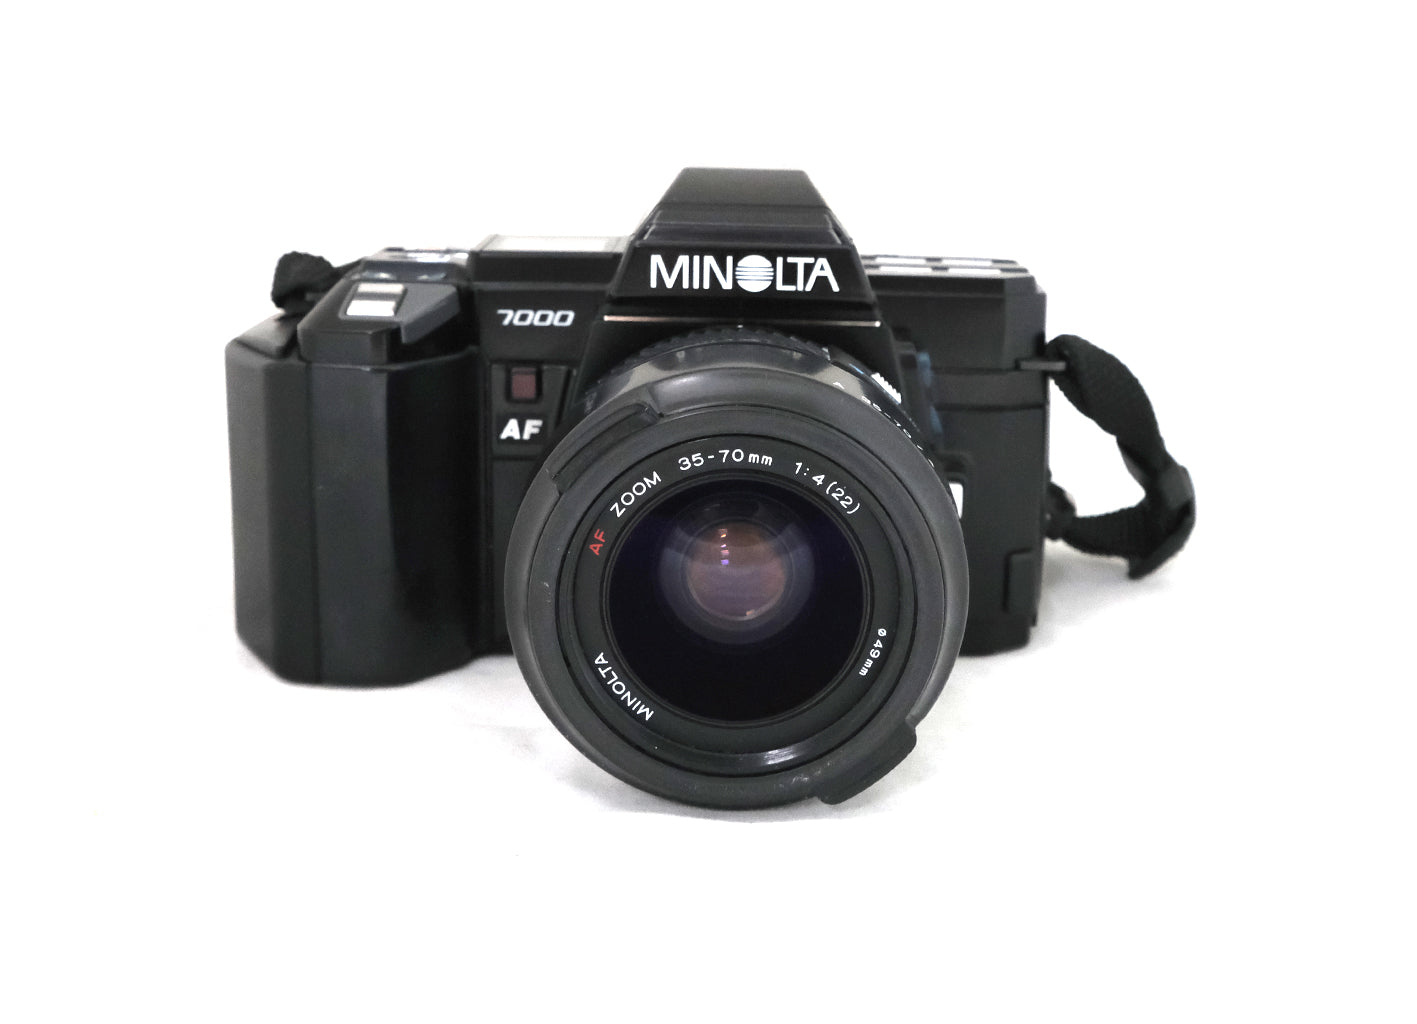 Minolta 7000 + Minolta 35-70 F/4 AF